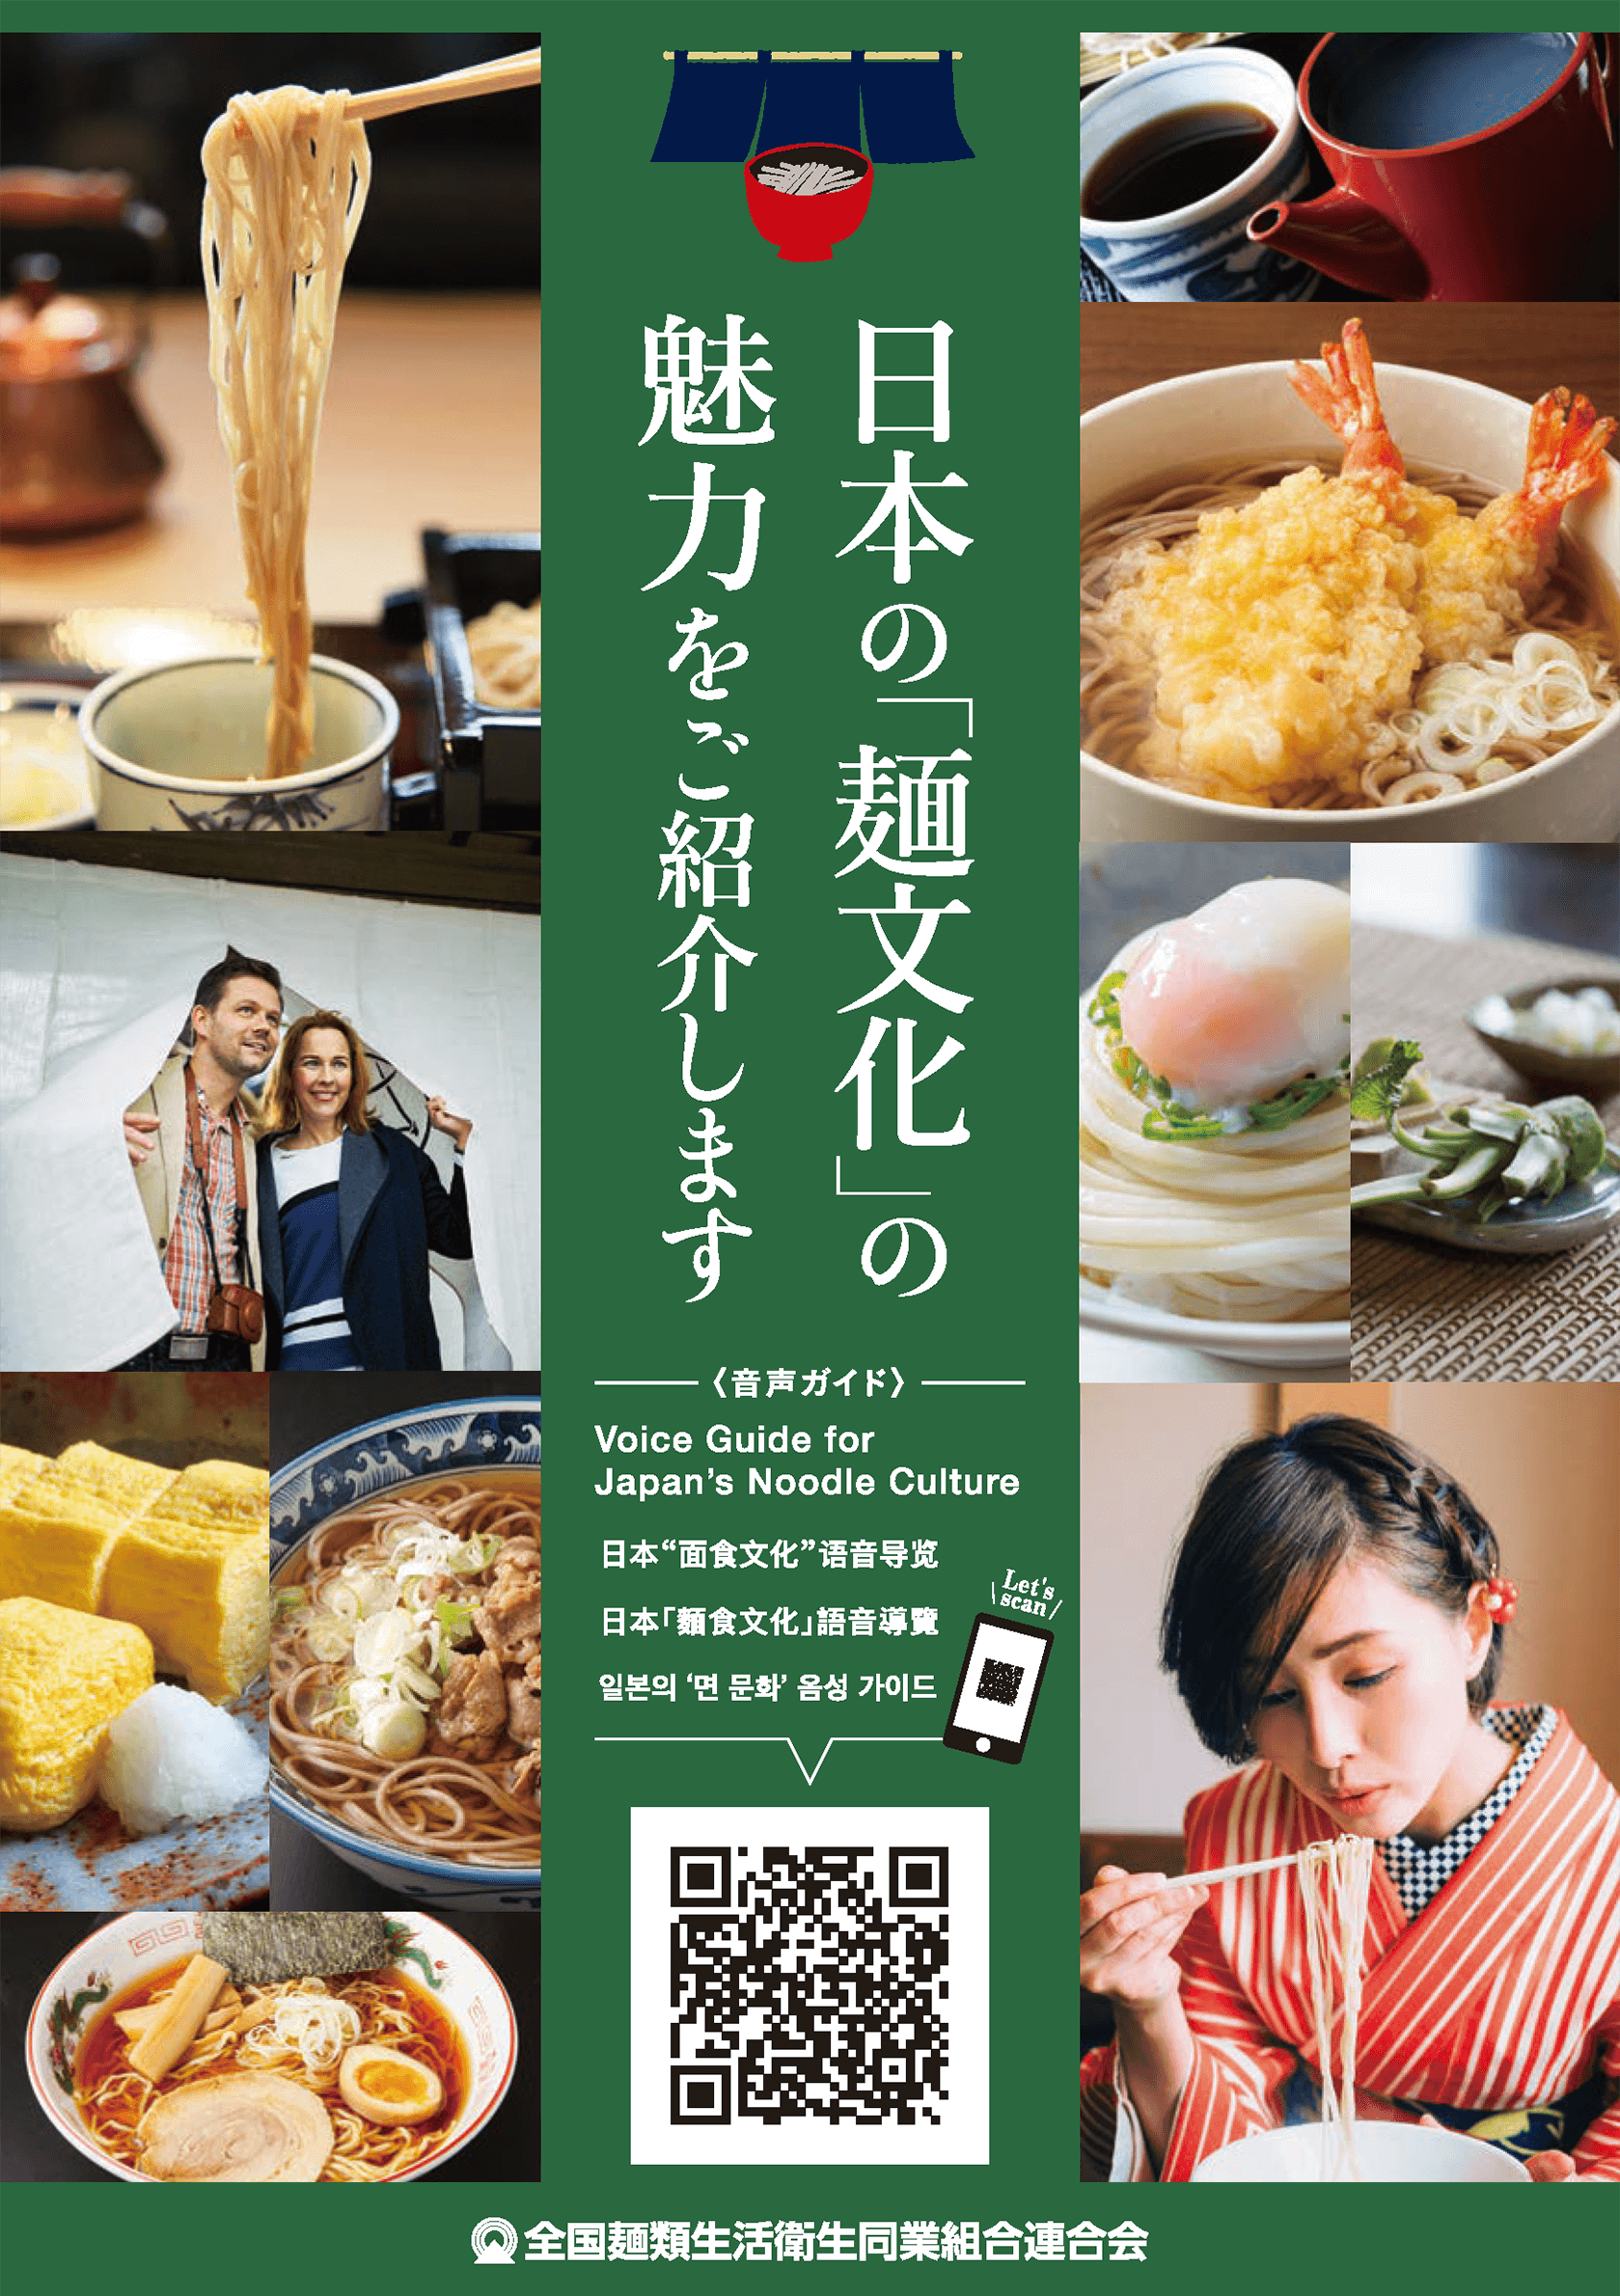 日本の「麺文化」の魅力をご紹介します